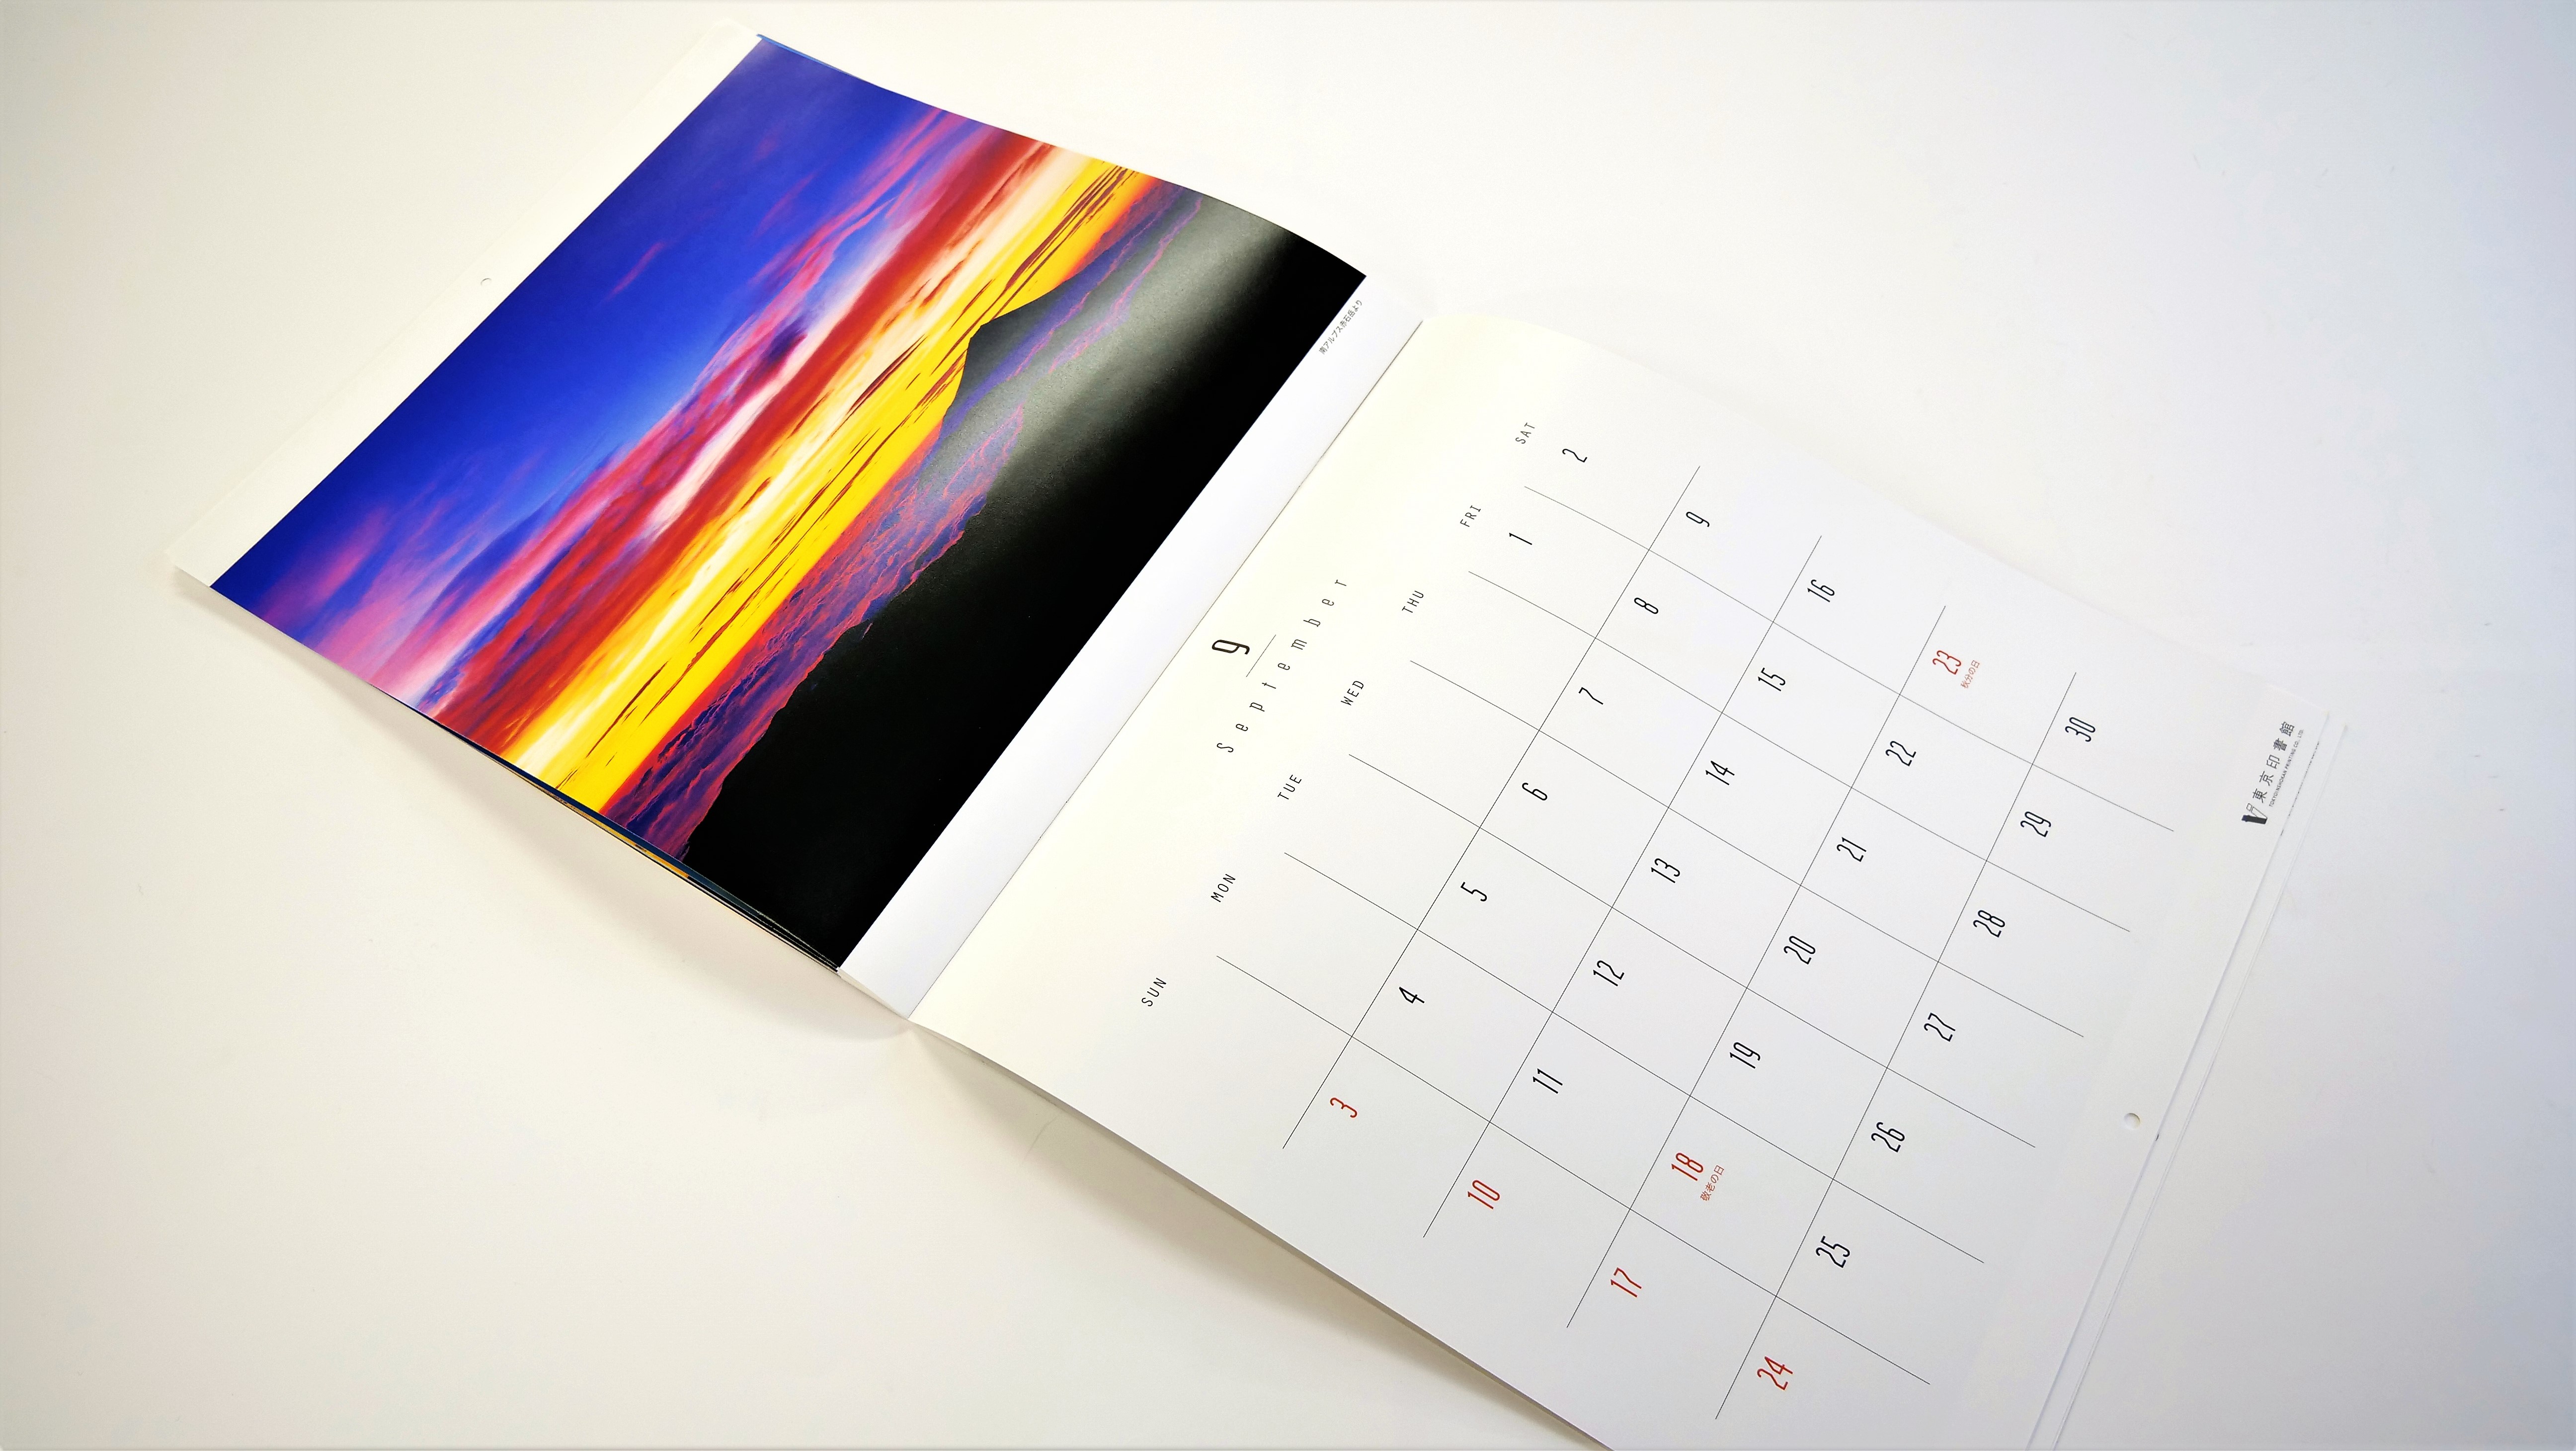 日々違う表情を見せる壮麗な富士山カレンダー。ブロードインキで高発色を再現 - 東京印書館 | 写真集・展覧会図録・絵本・その他印刷物の企画制作|  TOKYO INSHOKAN PRINTING CO.